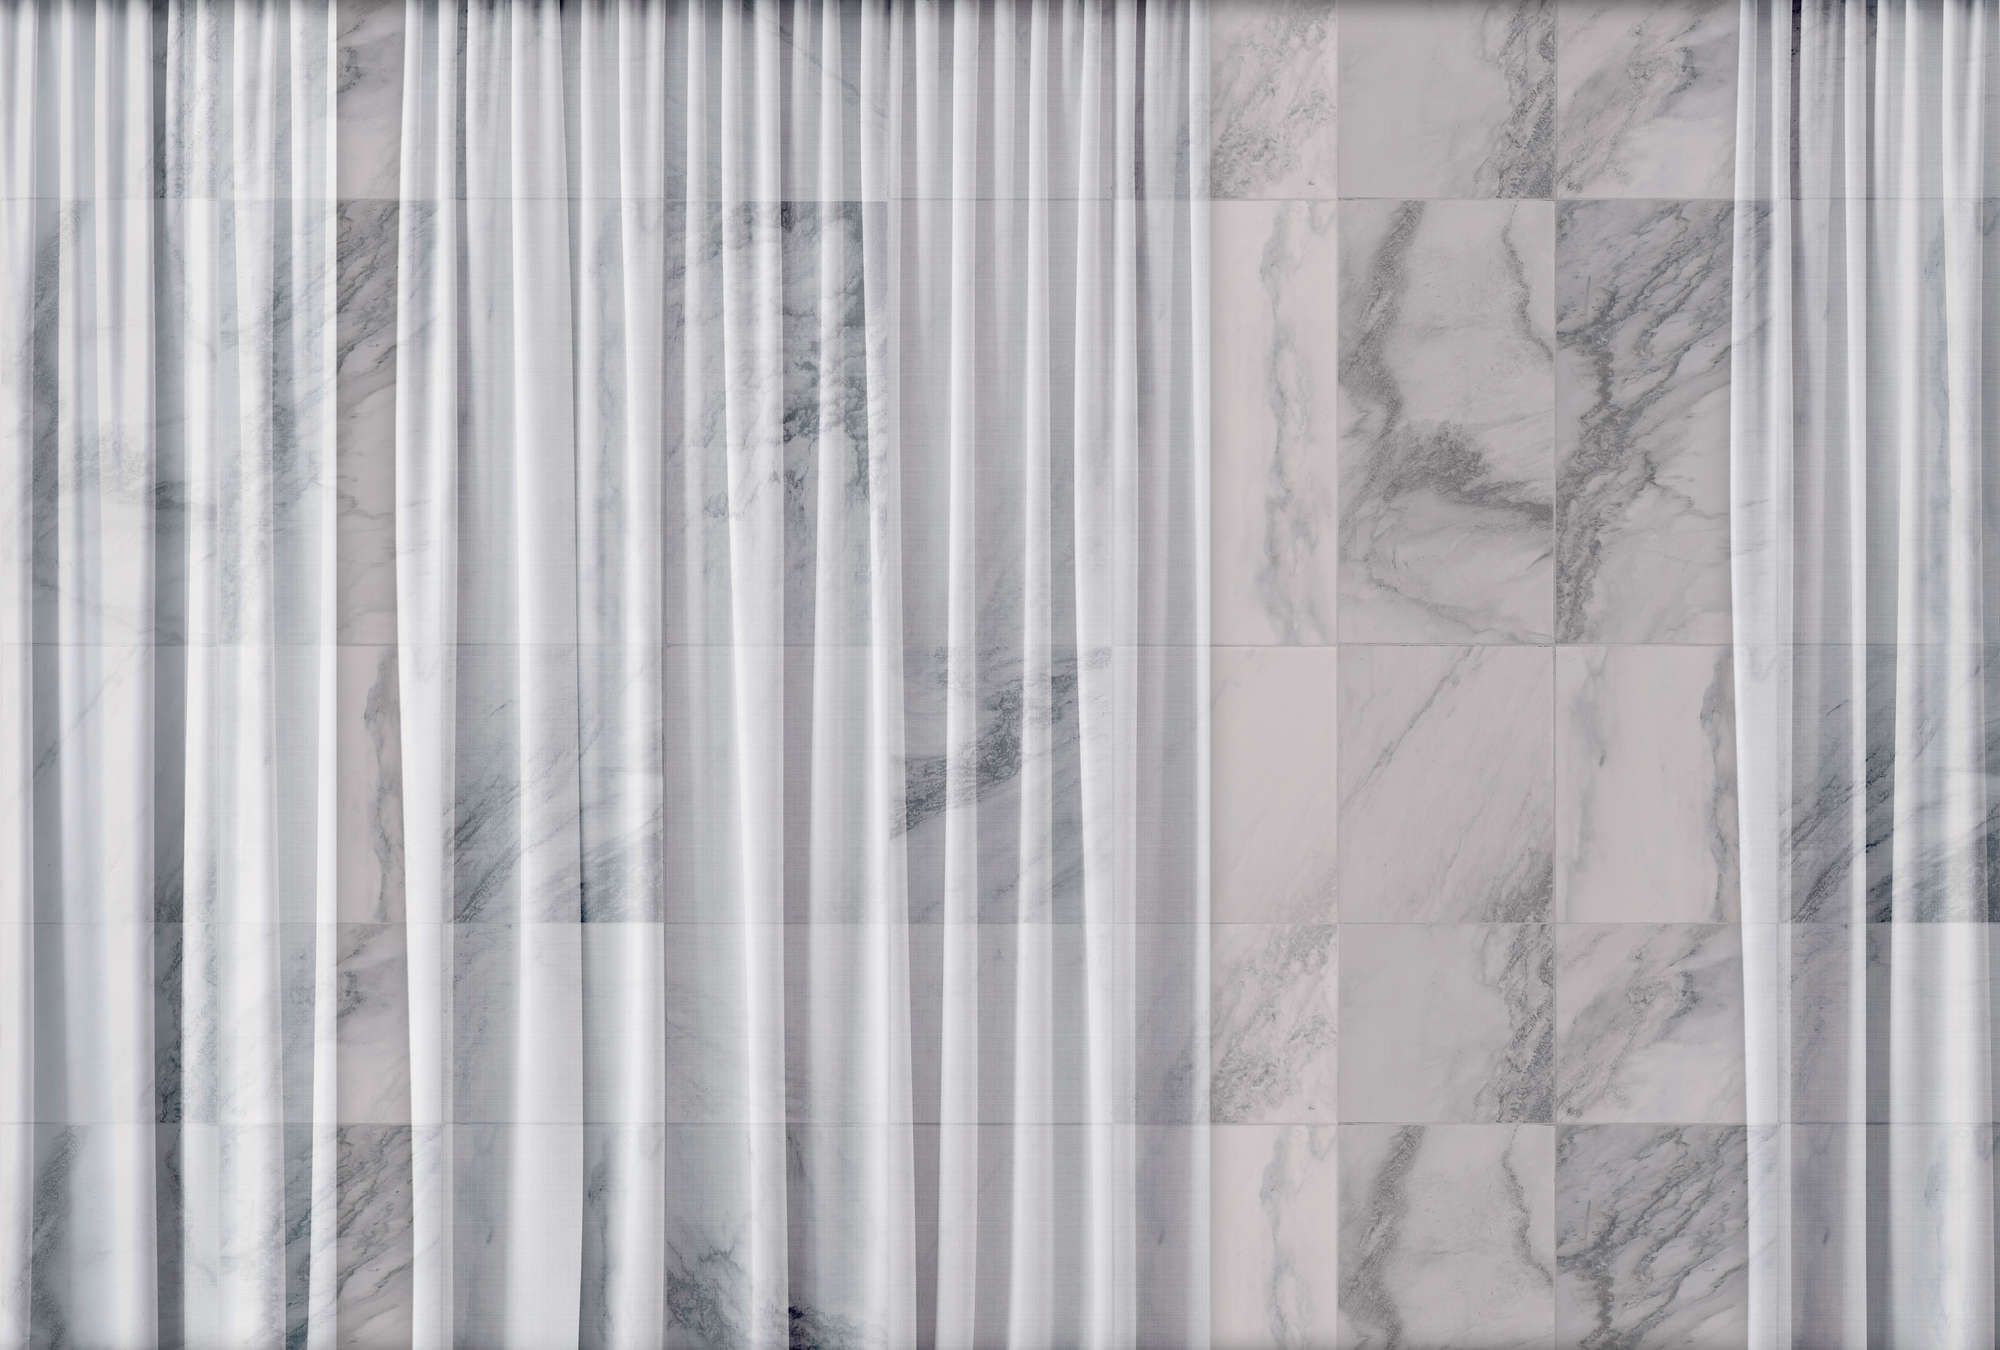             Digital behang »nova 1« - Discreet vallend wit gordijn voor marmeren muur - Matte, gladde vliesstof
        